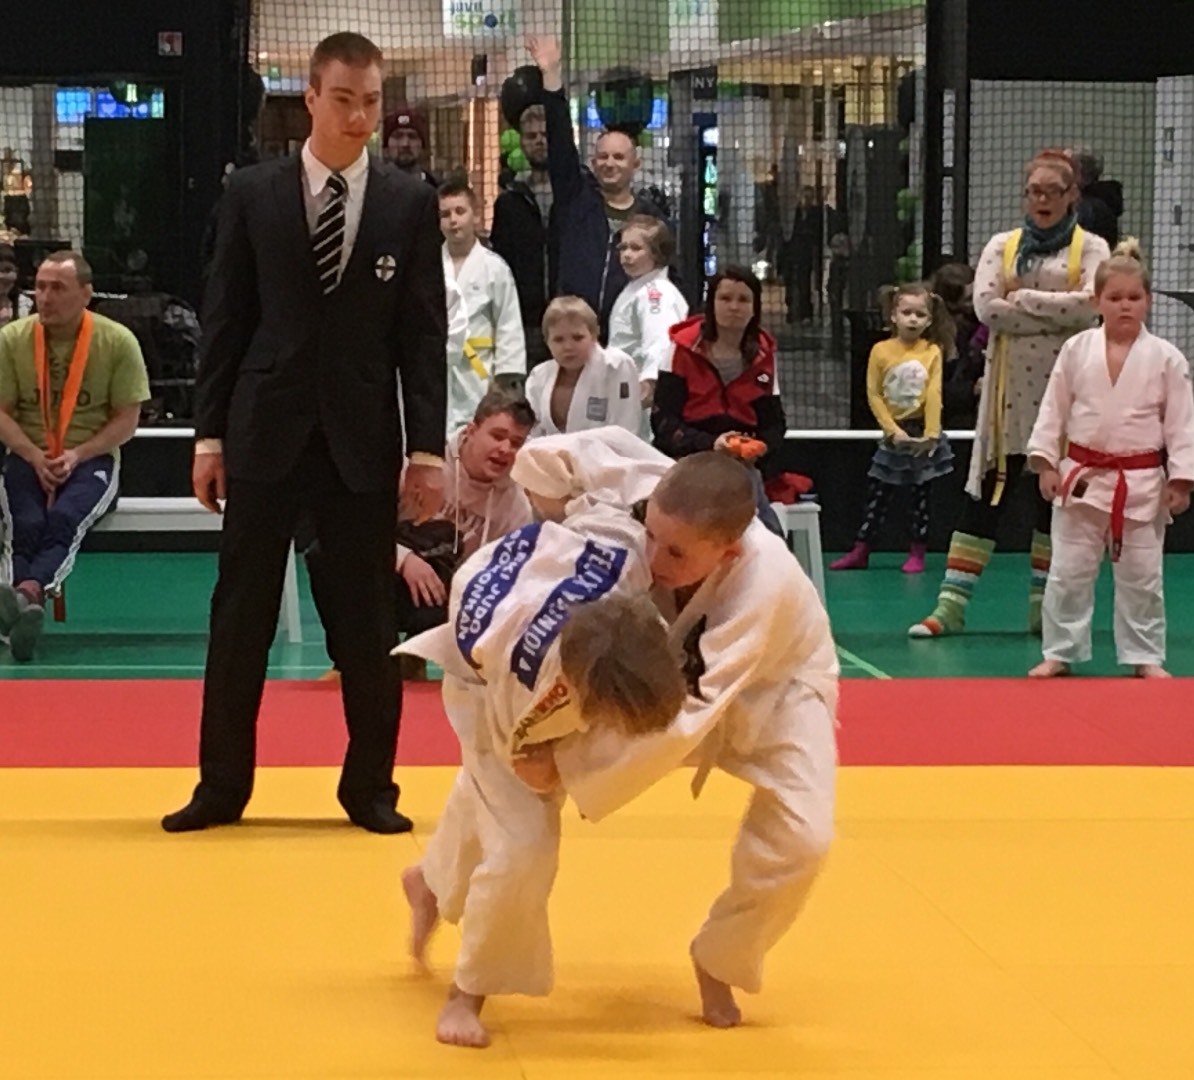 Liikkuvaa opiskelijaelämää LeKi-judon parissa!